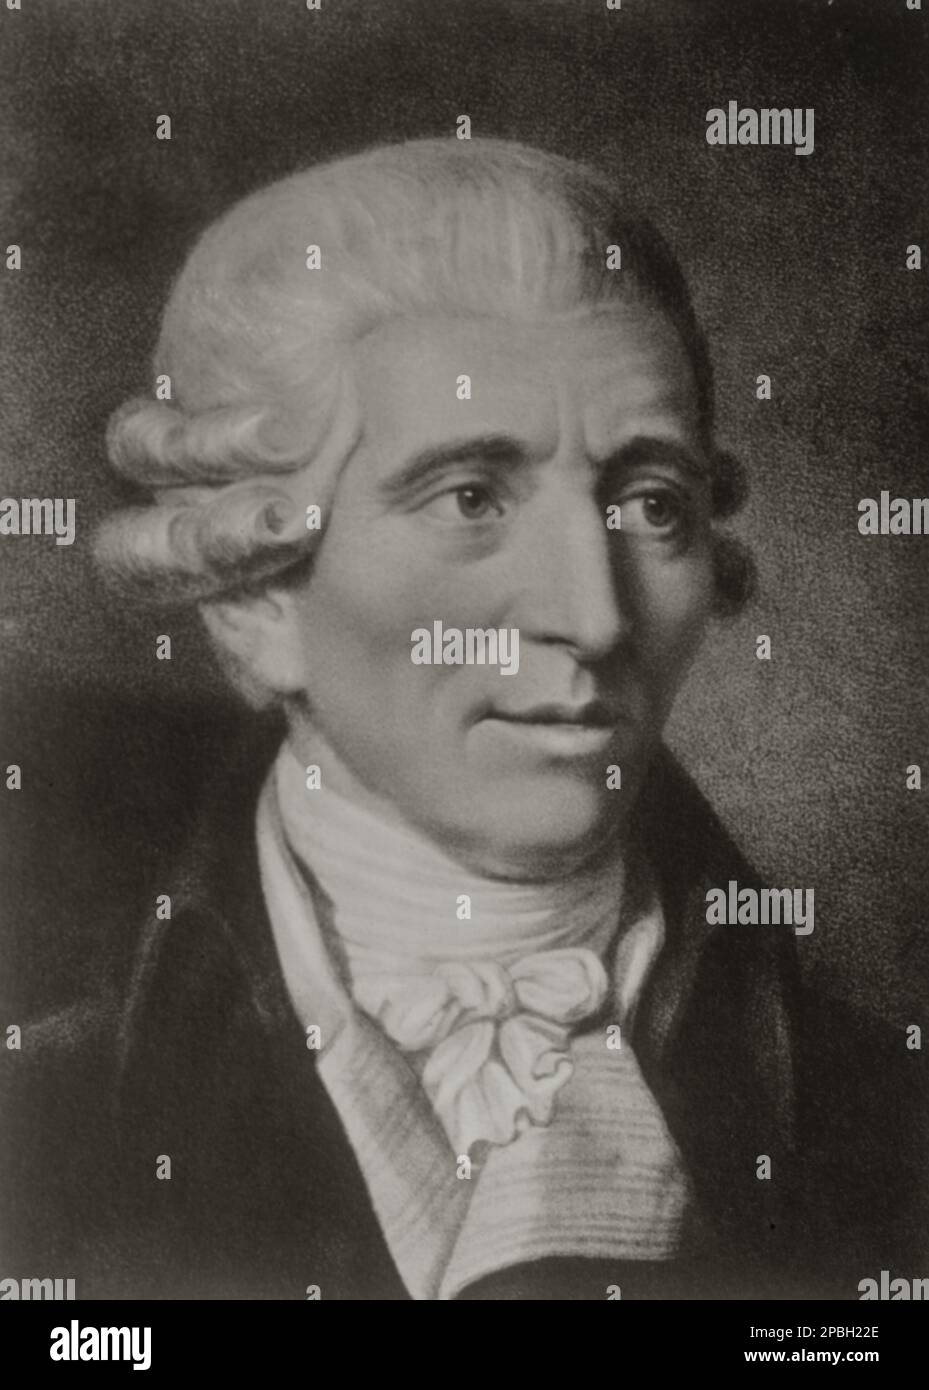 Il celebre compositore di musica barocca austriaco Franz JOSEPH HAYDN ( 1732 - 1809 ) è stato uno dei compositori più importanti del periodo classico, ed è stato chiamato da alcuni "Padre della Sinfonia" e "Padre del Quartetto d'archi". Cittadino austriaco di lunga durata, Haydn ha trascorso gran parte della sua carriera come musicista di corte per la ricca famiglia ungherese Esterhezy nella sua remota proprietà. Isolato da altri compositori e tendenze musicali fino alla parte successiva della sua lunga vita, fu, per così dire, "costretto a diventare originale". Joseph Haydn era il fratello di Michael Haydn, lui stesso un altamente considerato Foto Stock